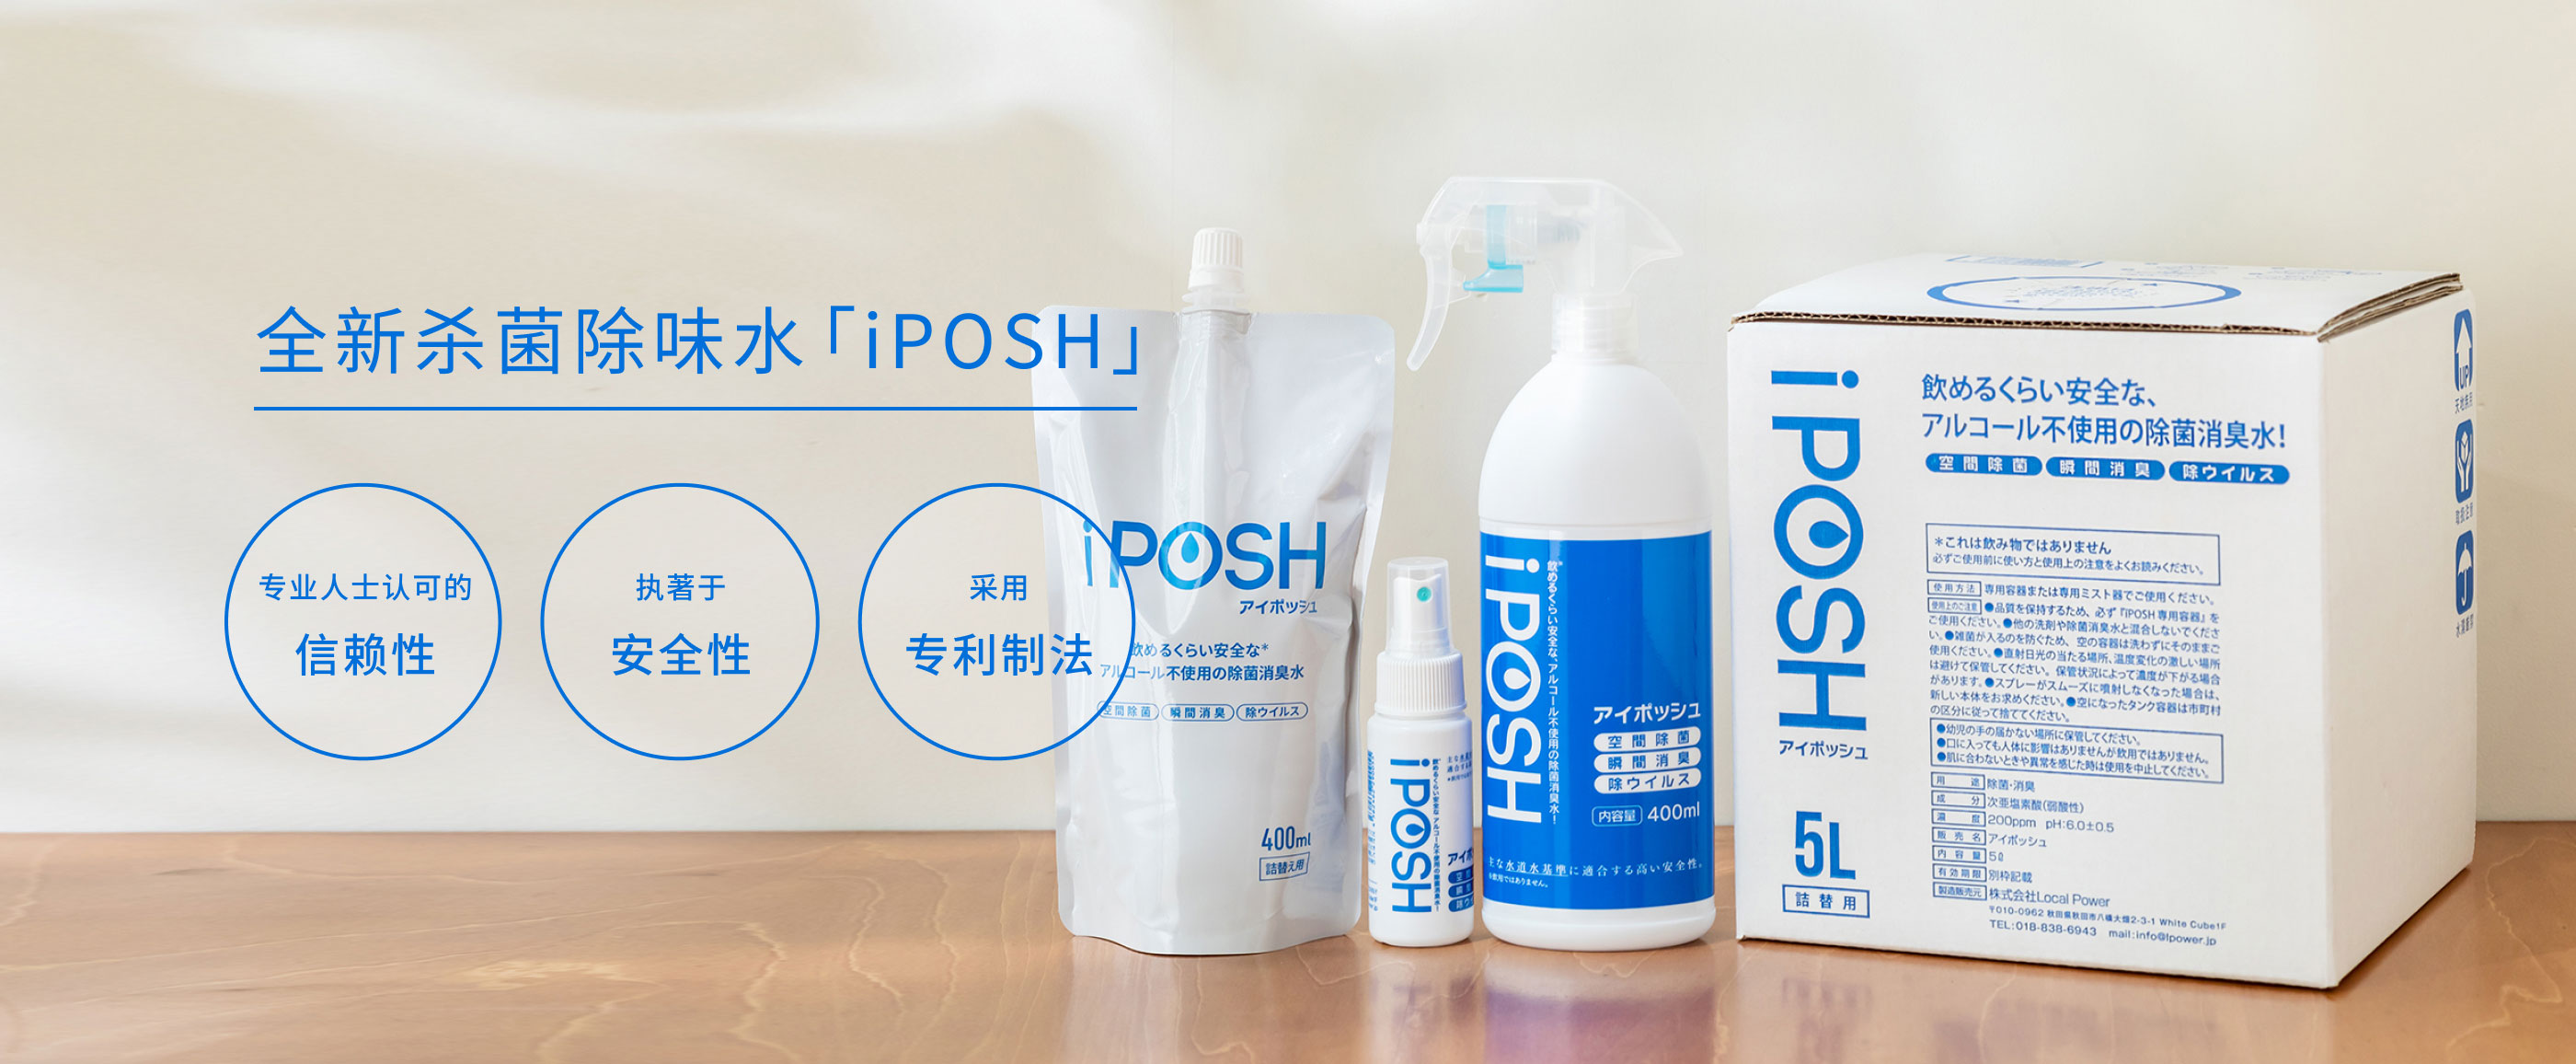 全新杀菌除味水「iPOSH」专业人士认可的信赖性、执著于安全性、采用专利制法